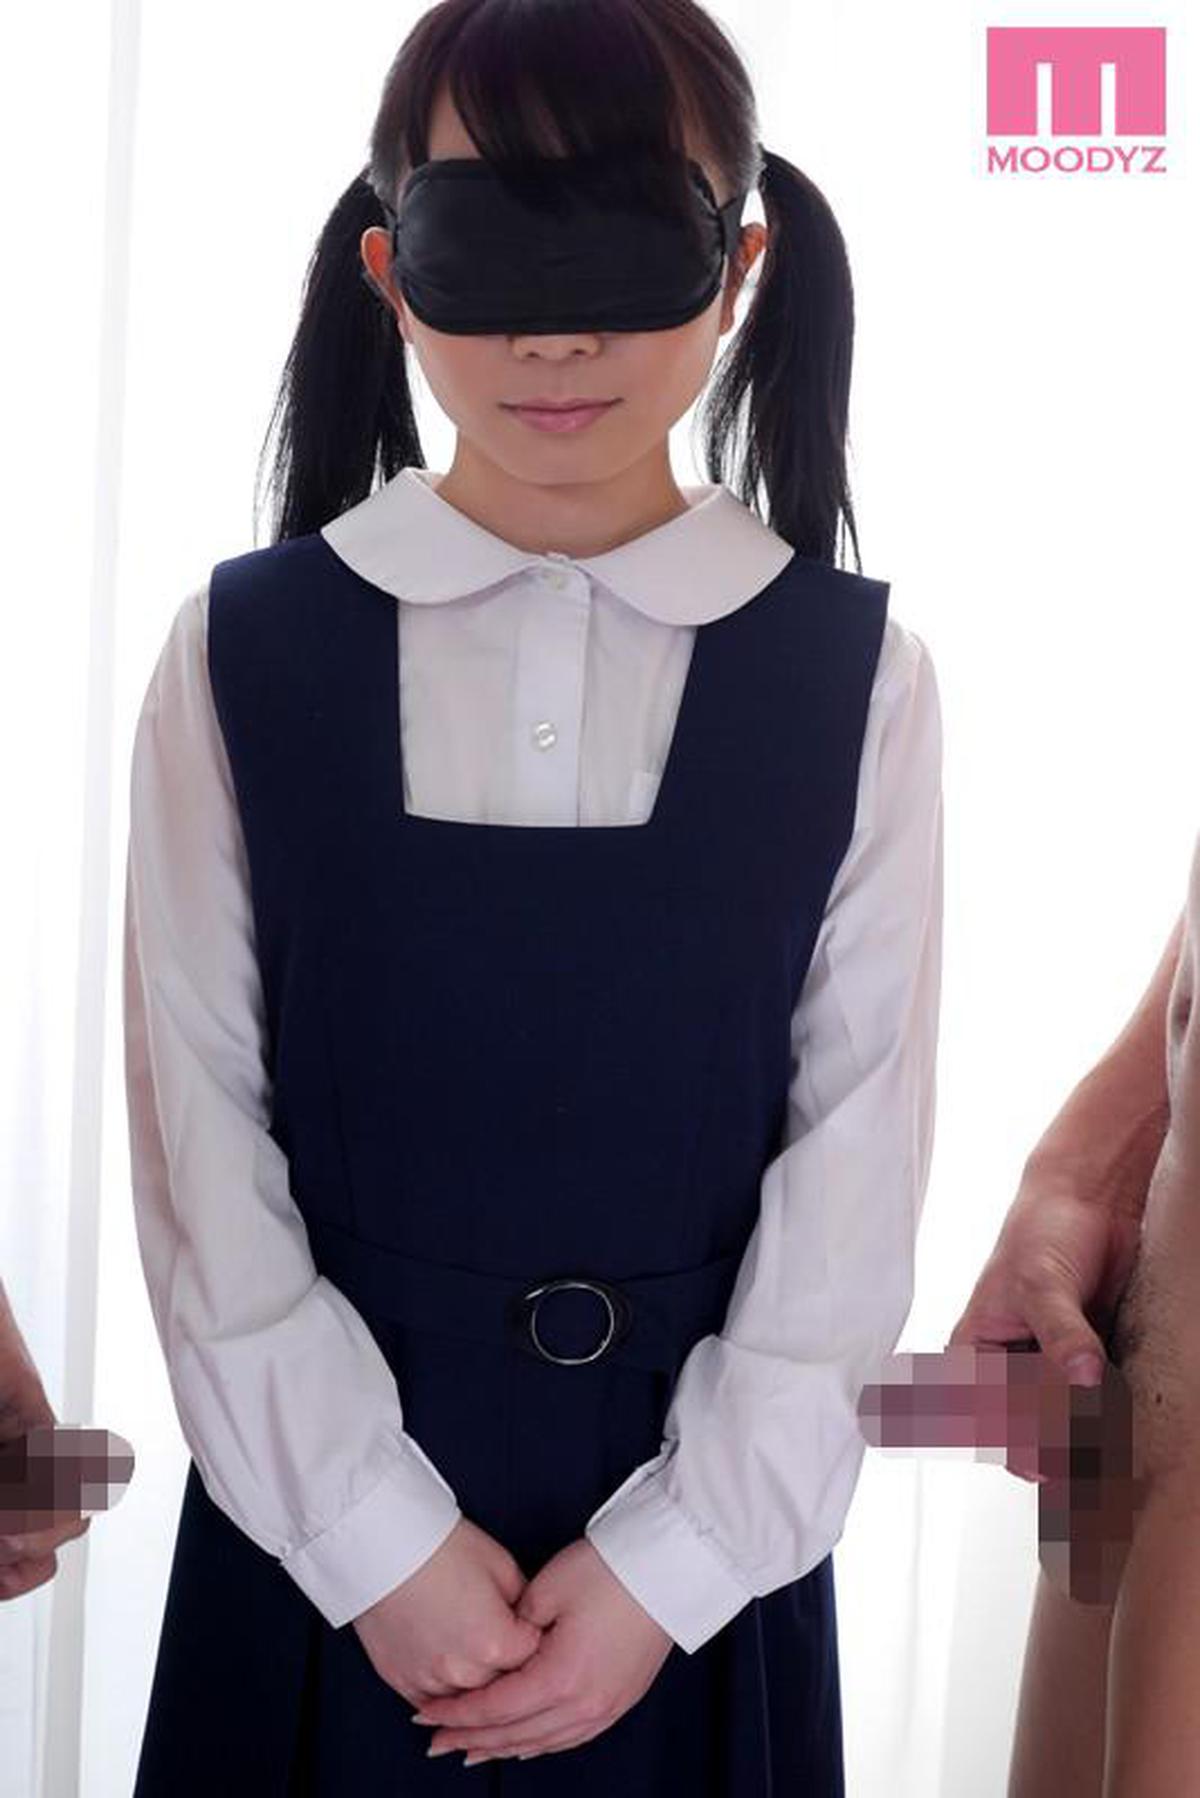 MIAD-781 AV estreia estreia AV, enganando uma garota NG e vendando os olhos para não ser notada Akane Yuuki